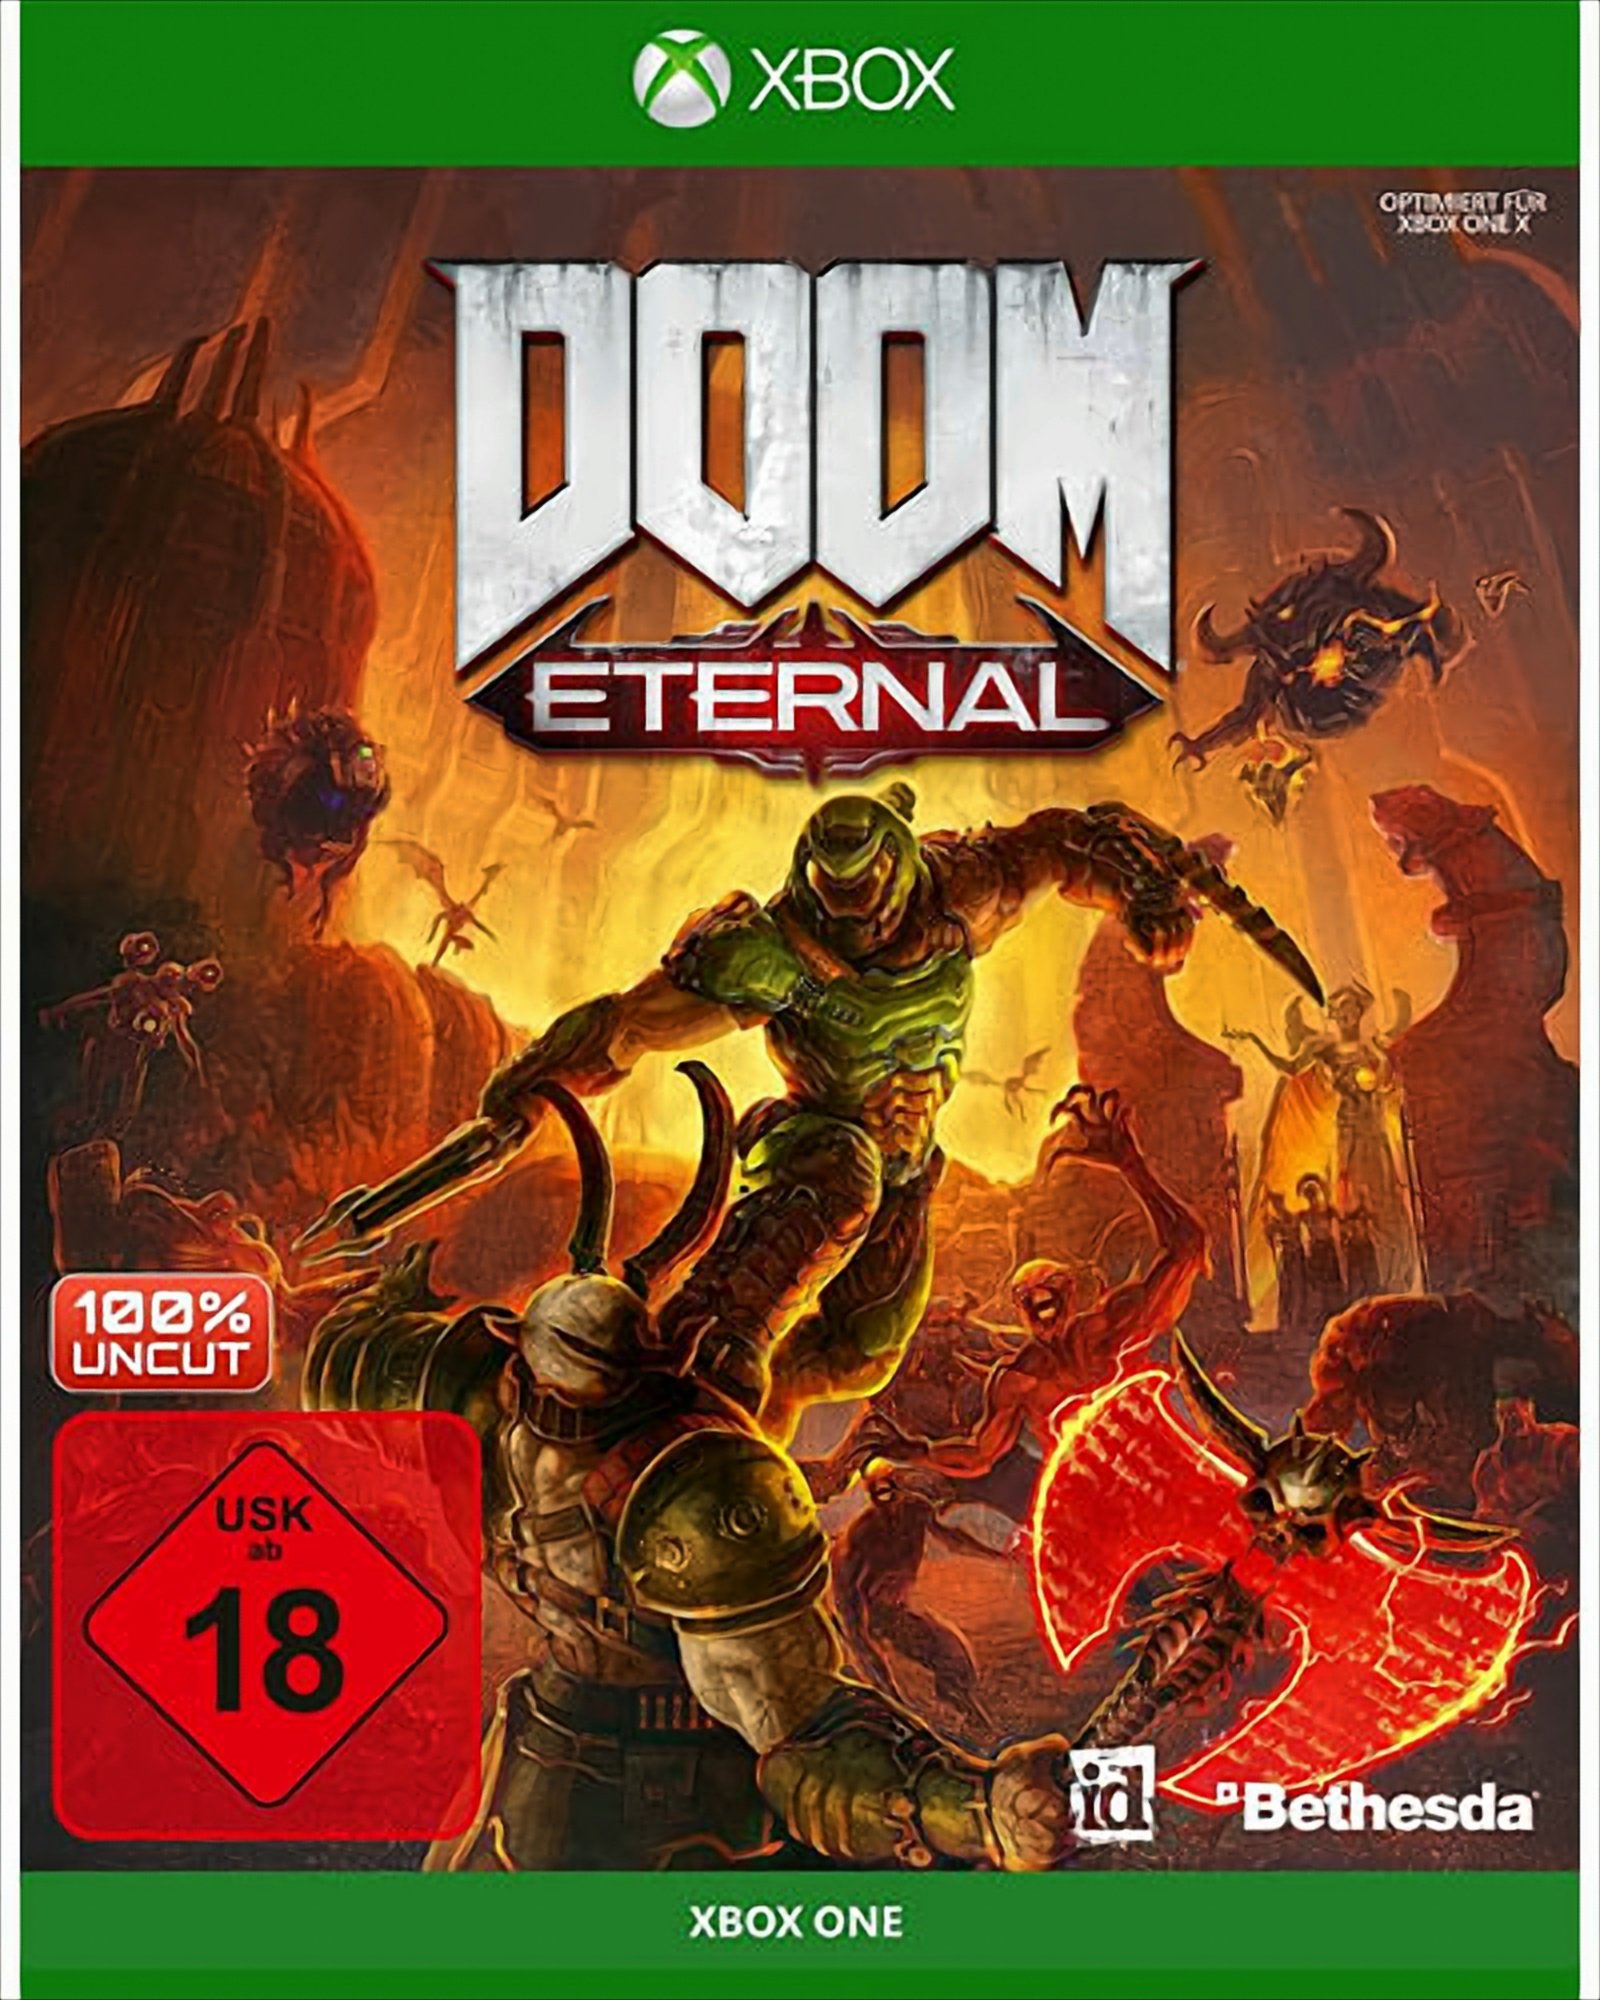 Doom Eternal XB-One - One] [Xbox